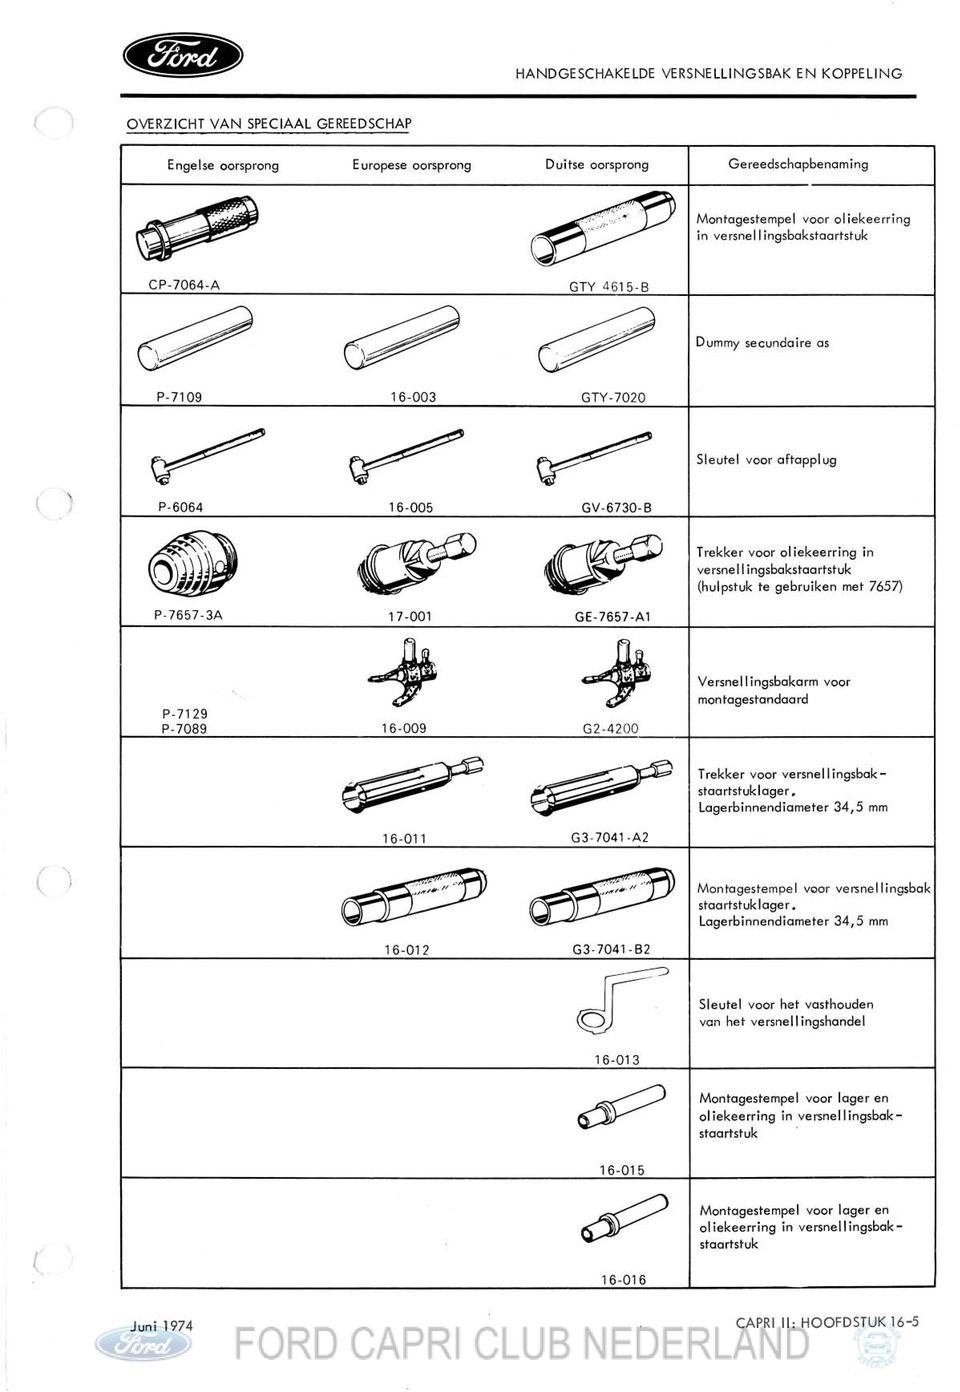 Montagestempel voar versnellingsbak Lagerbinnendiameter 34,5 mm Sleutel voor het vasthouden van het versnel l ingshandel 16-01 3 6Q Montagestempel voor lager en